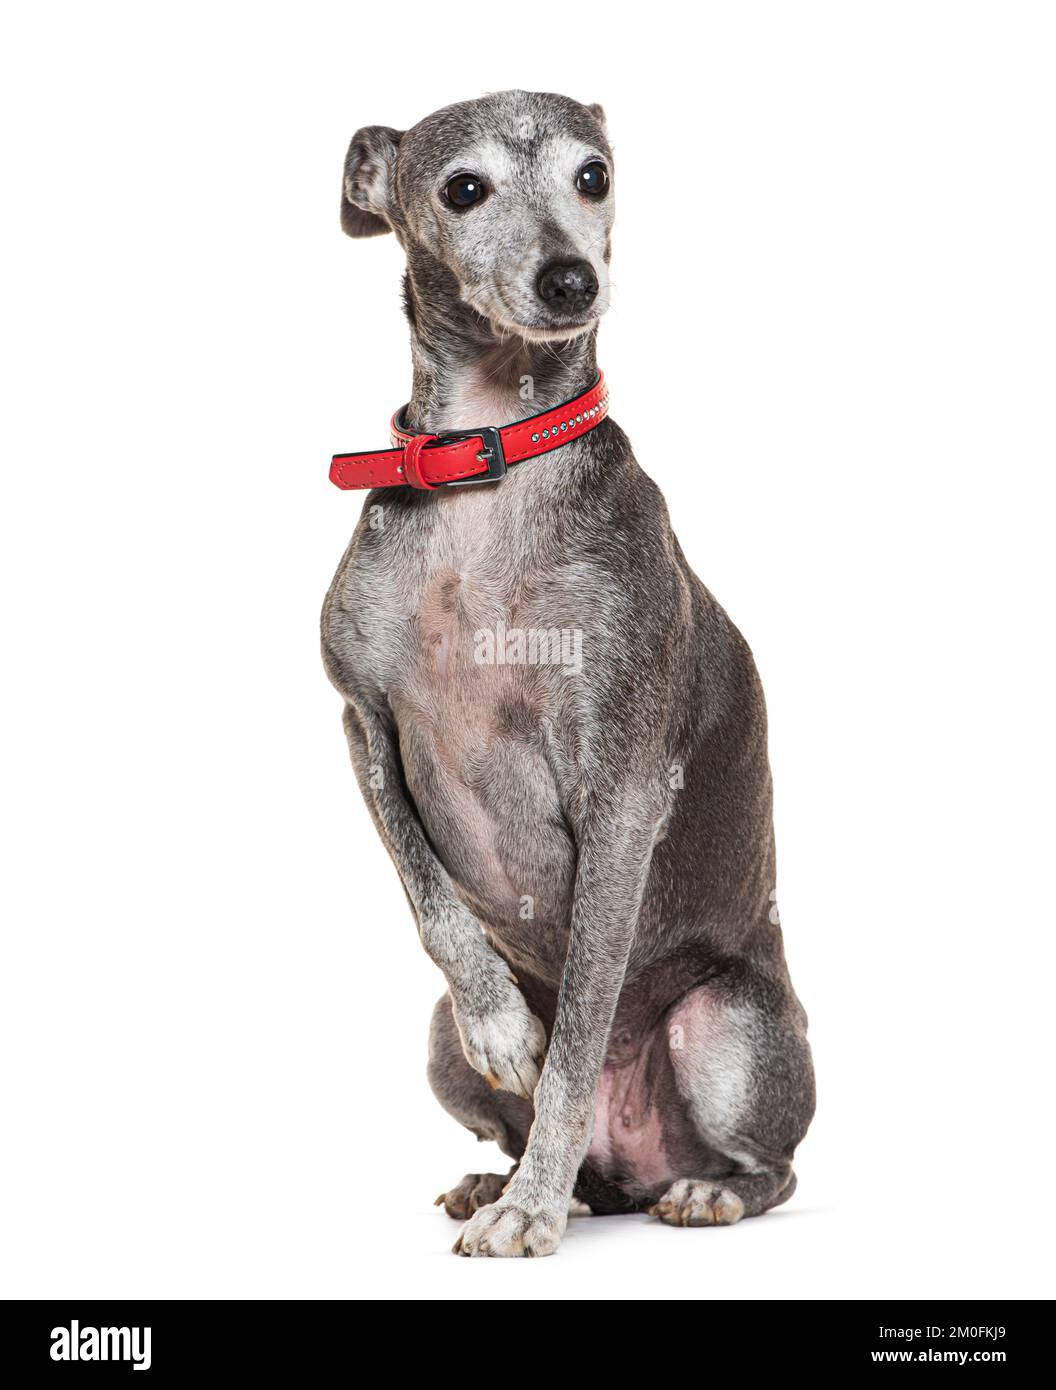 Alter italienischer Greyhound mit rotem Kragen, isoliert auf weiß Stockfoto